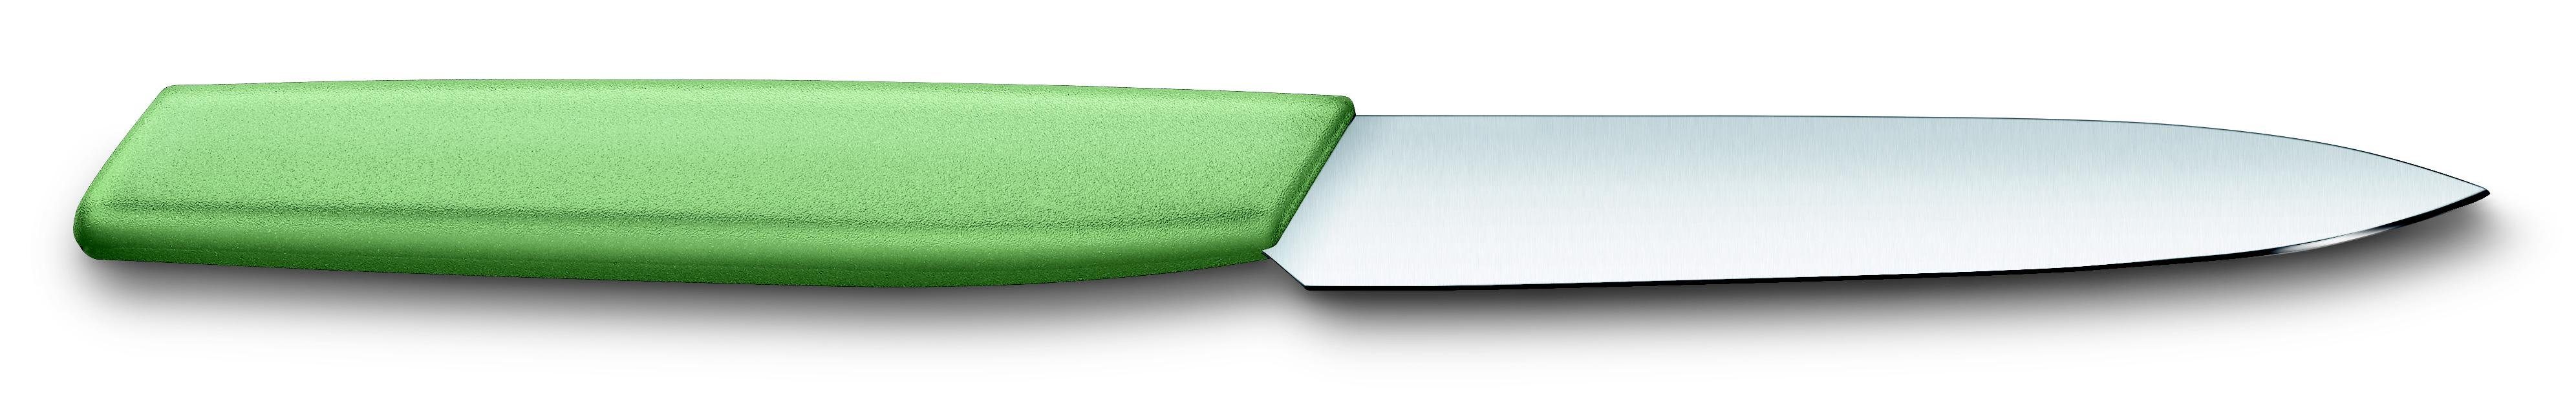 Victorinox Taschenmesser knife, 10 cm, moss Paring